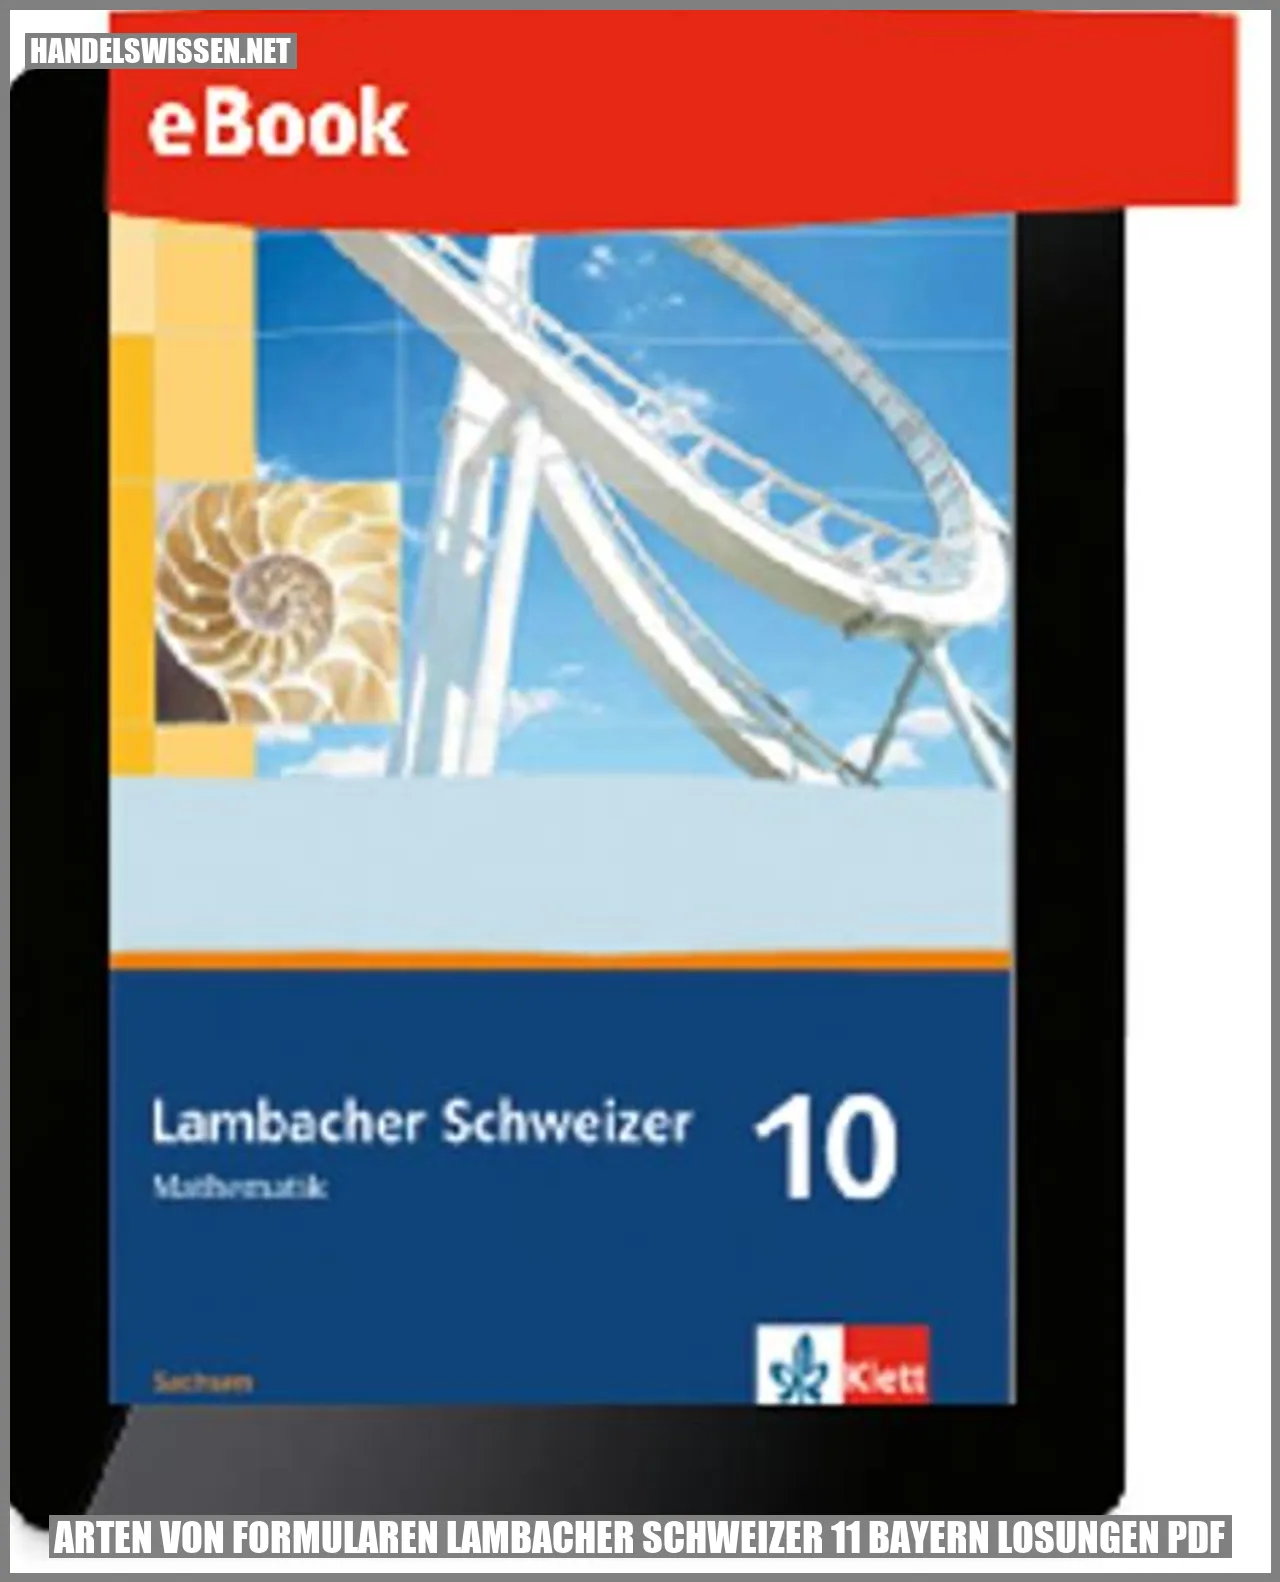 Arten von Formularen lambacher schweizer 11 bayern losungen pdf